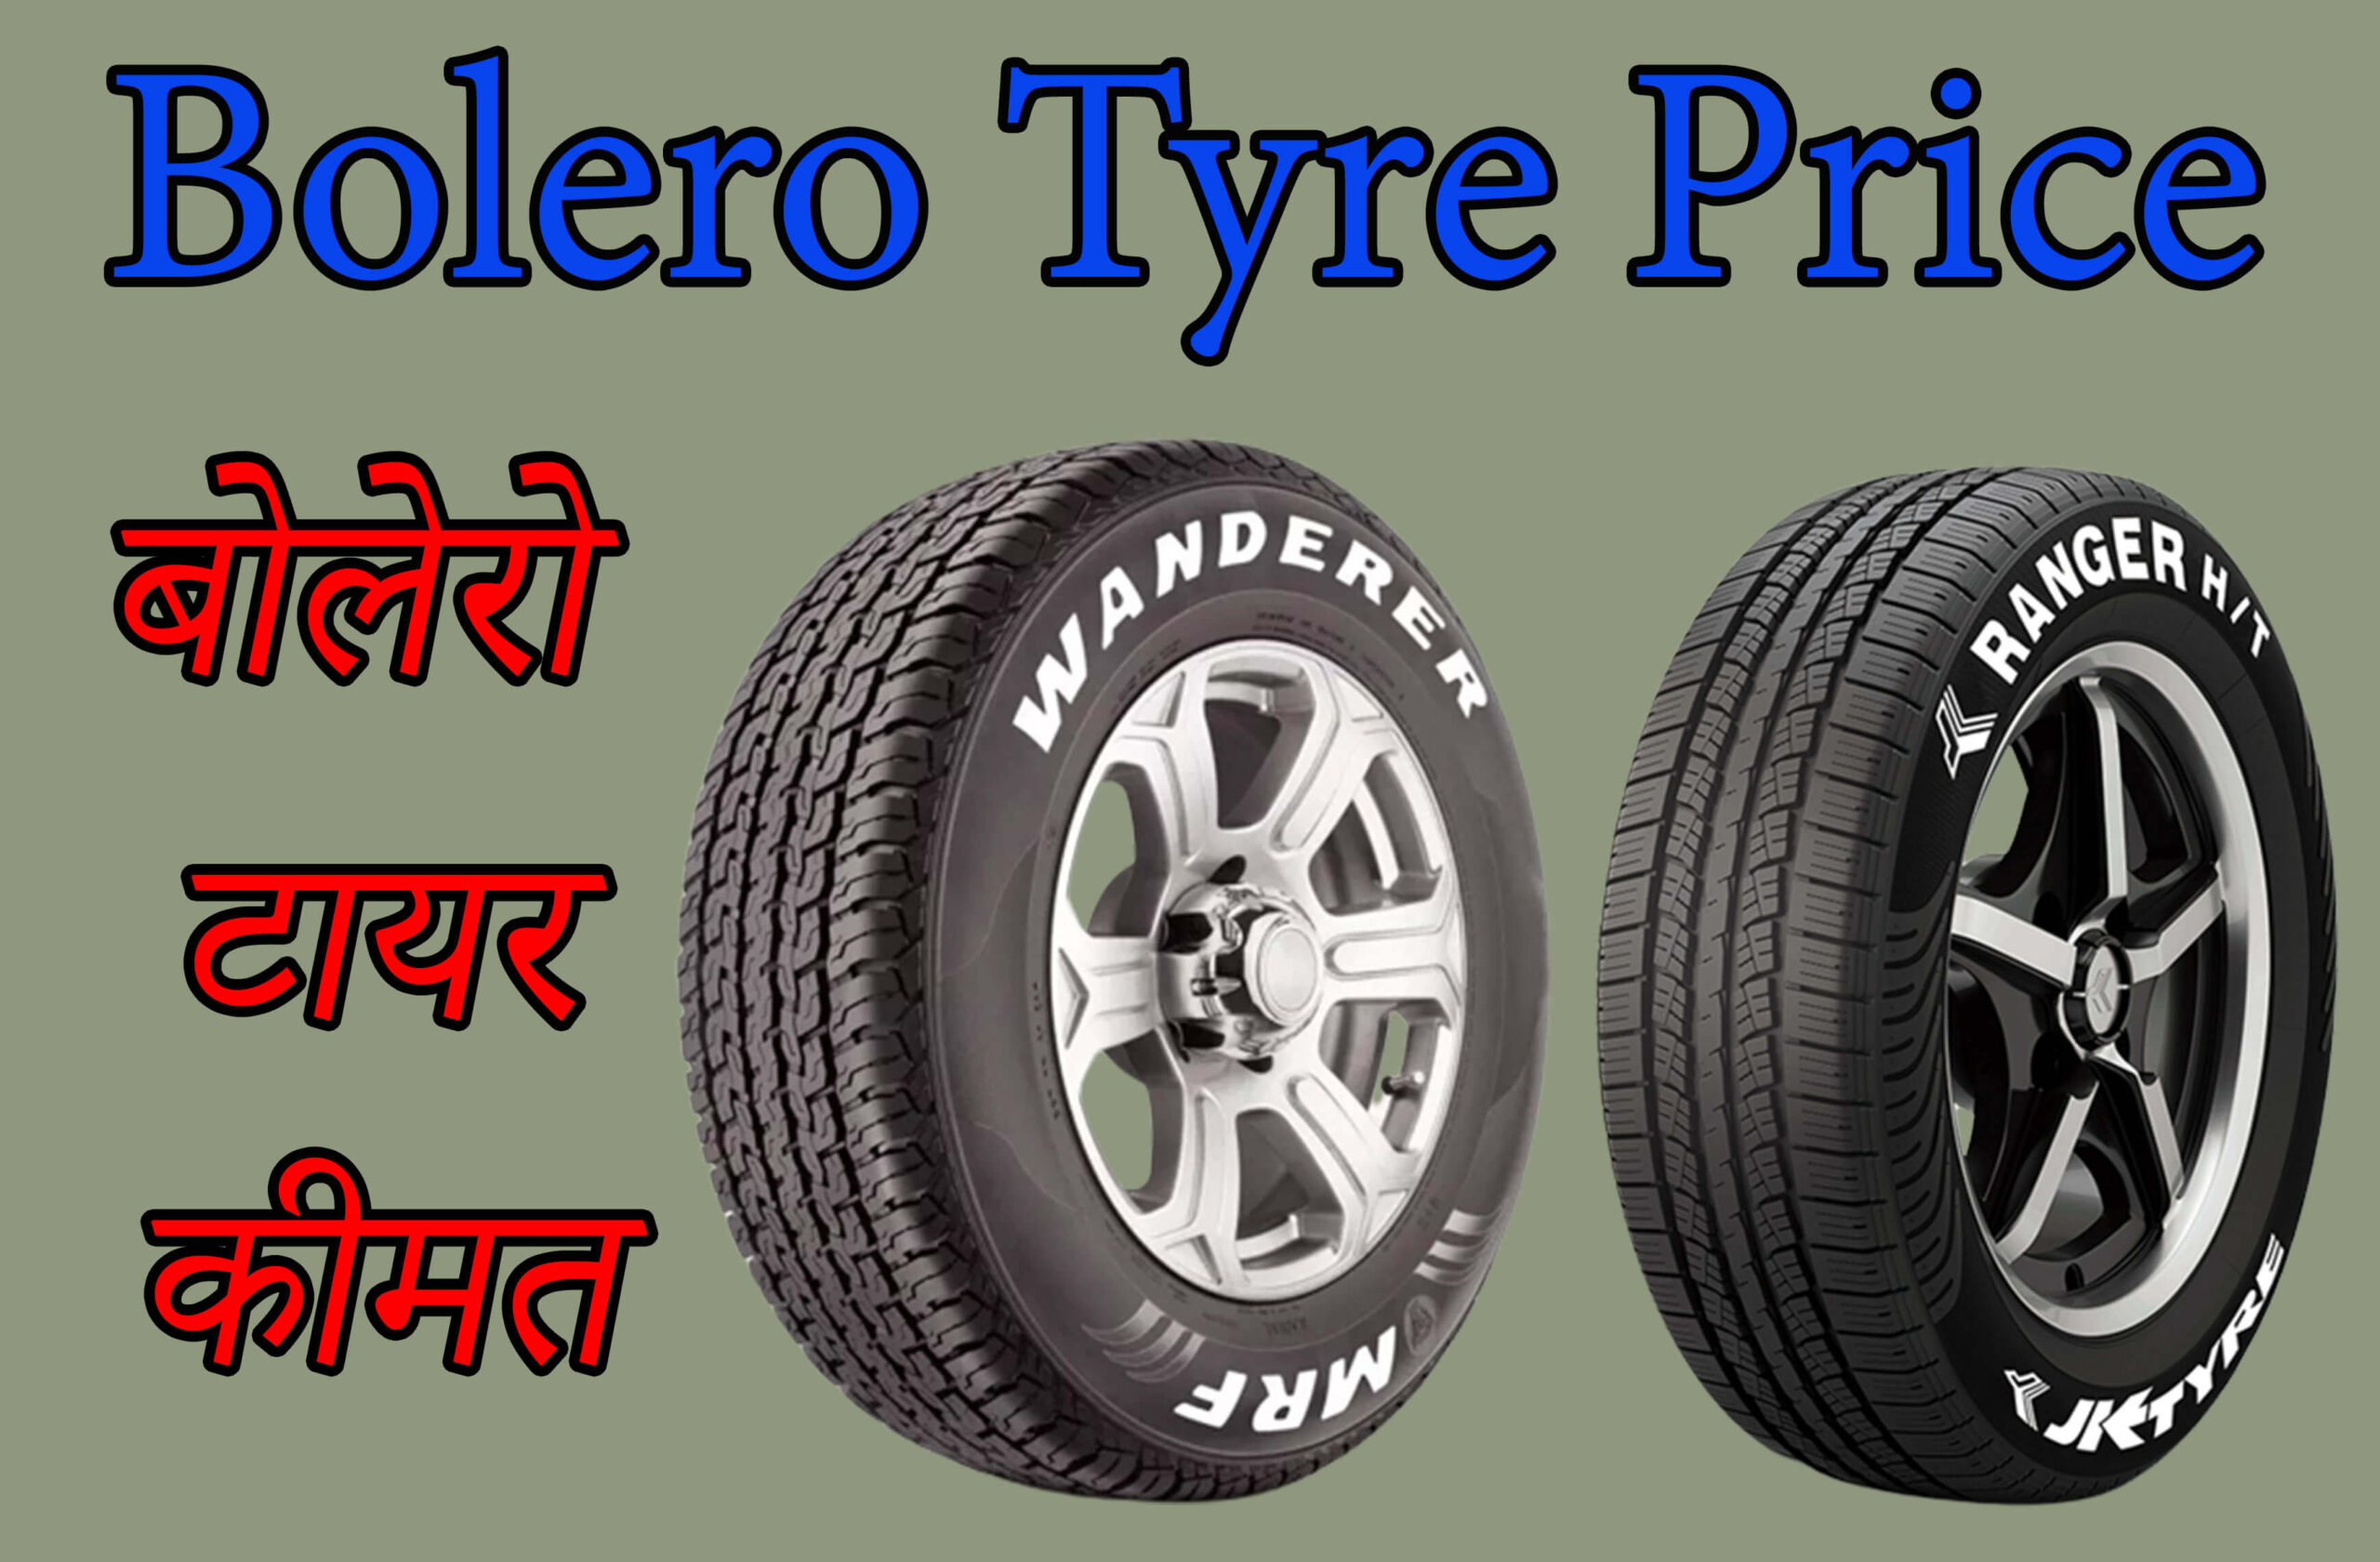 Bolero Tyre Price